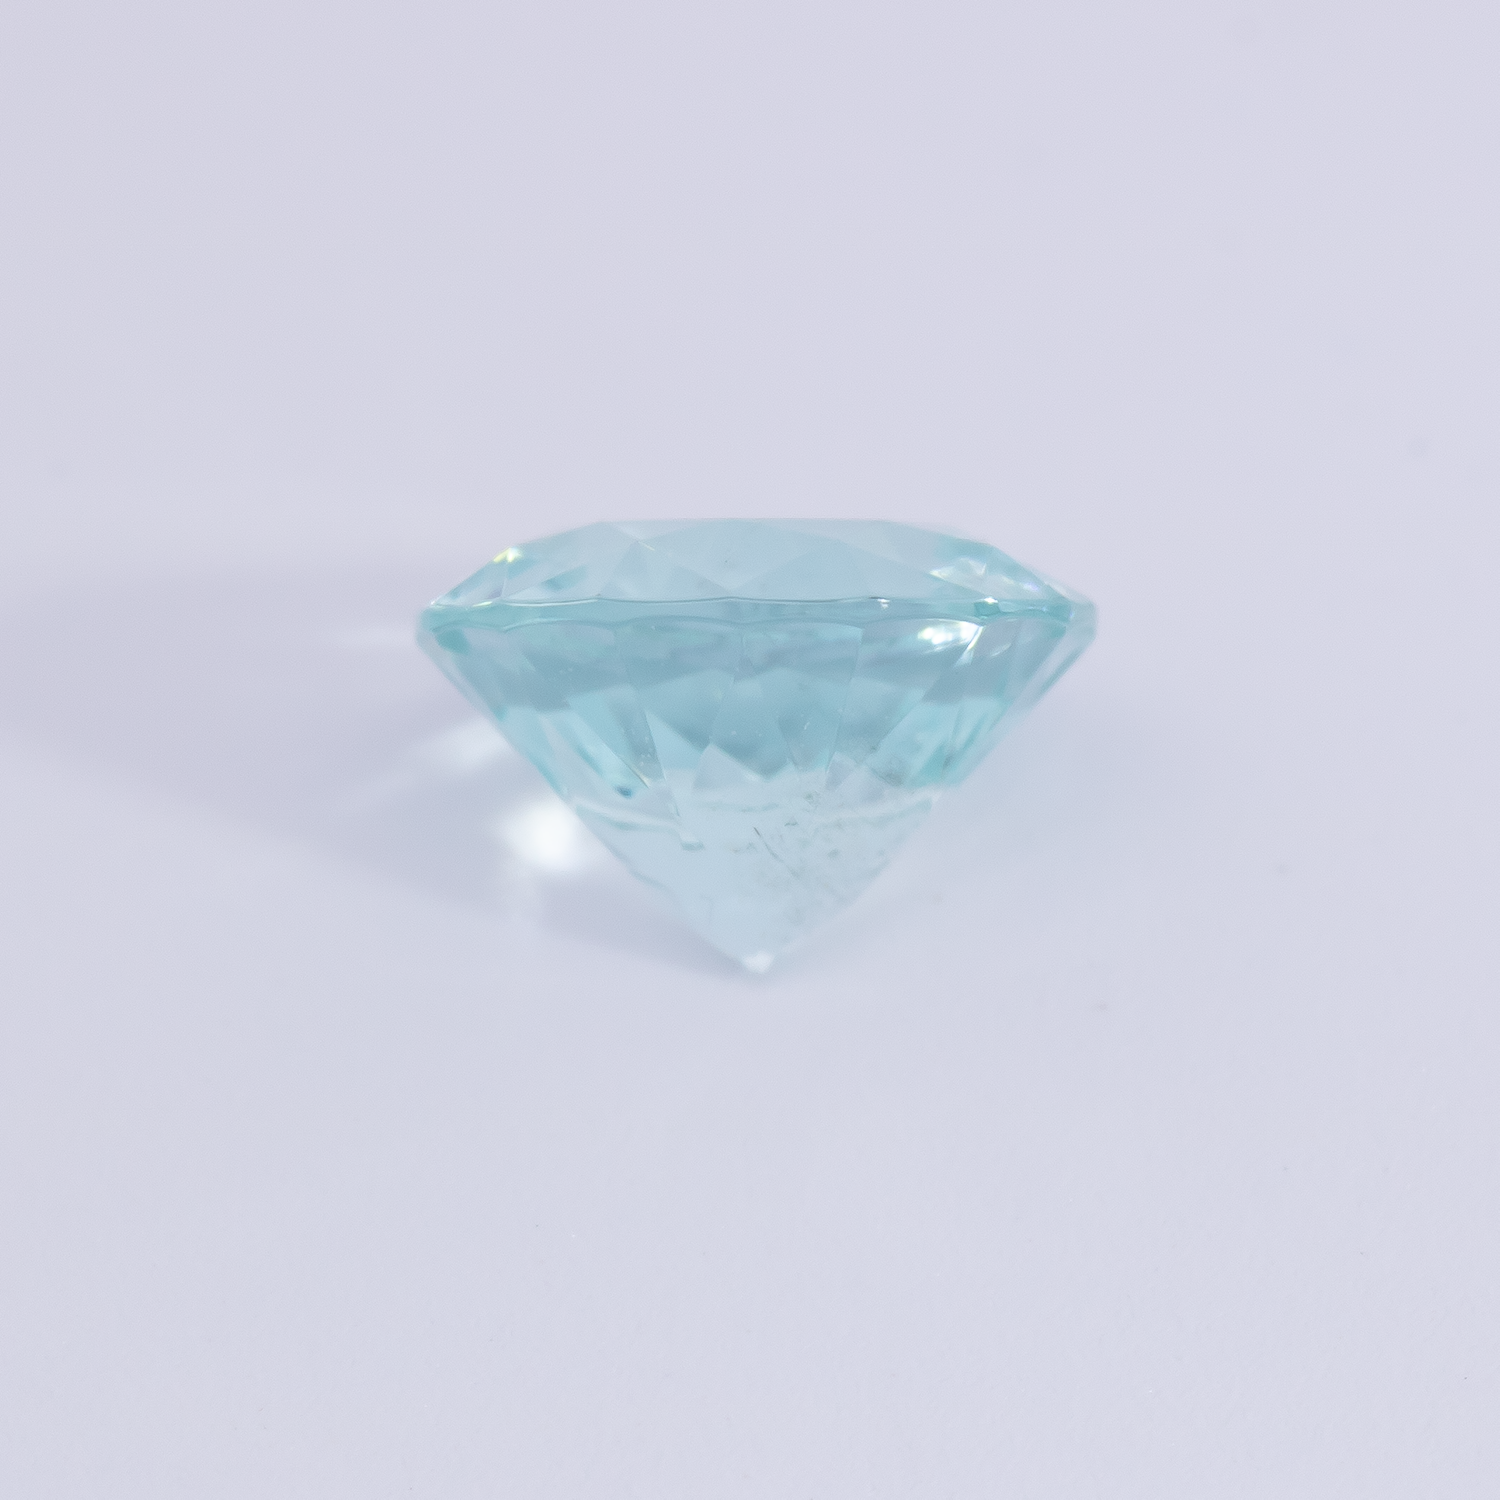 Beryll - blau, rund, 6x6 mm, 0.70 cts, Nr. BY90028